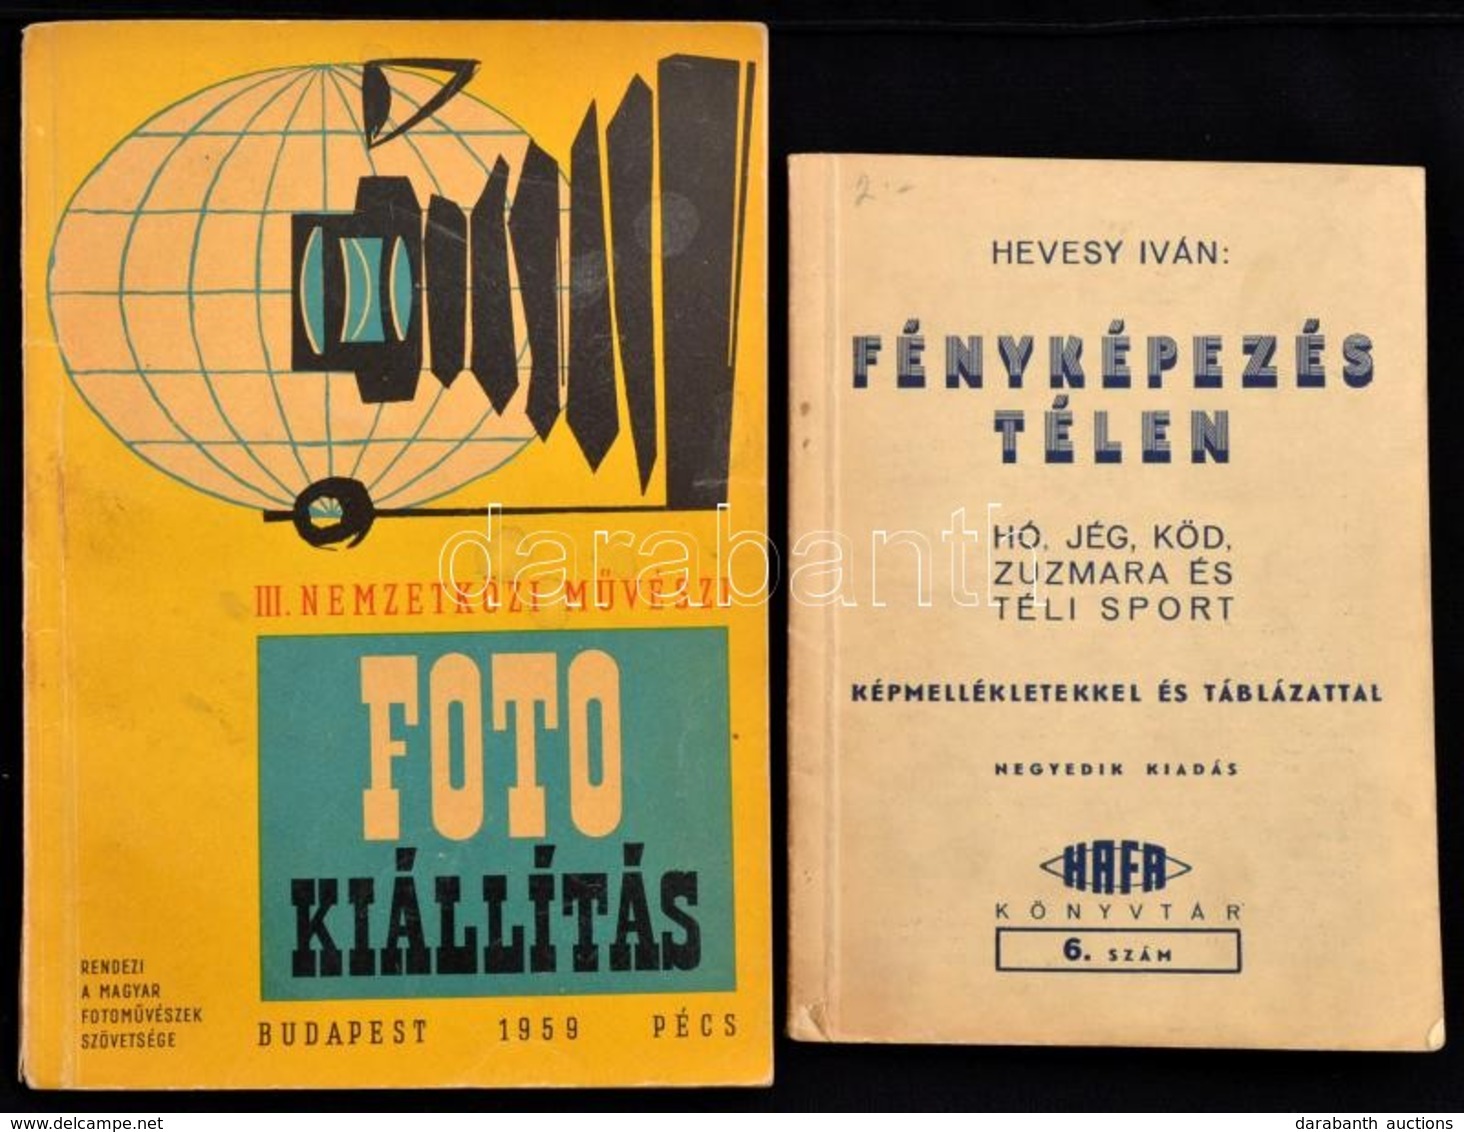 Hevesy Iván: Fényképezés Téten. Képmellékletekkel és Táblázattal. Hafa, Cca 1930. 32p.  + 1959 III. Nemzetközi Művészi F - Non Classés